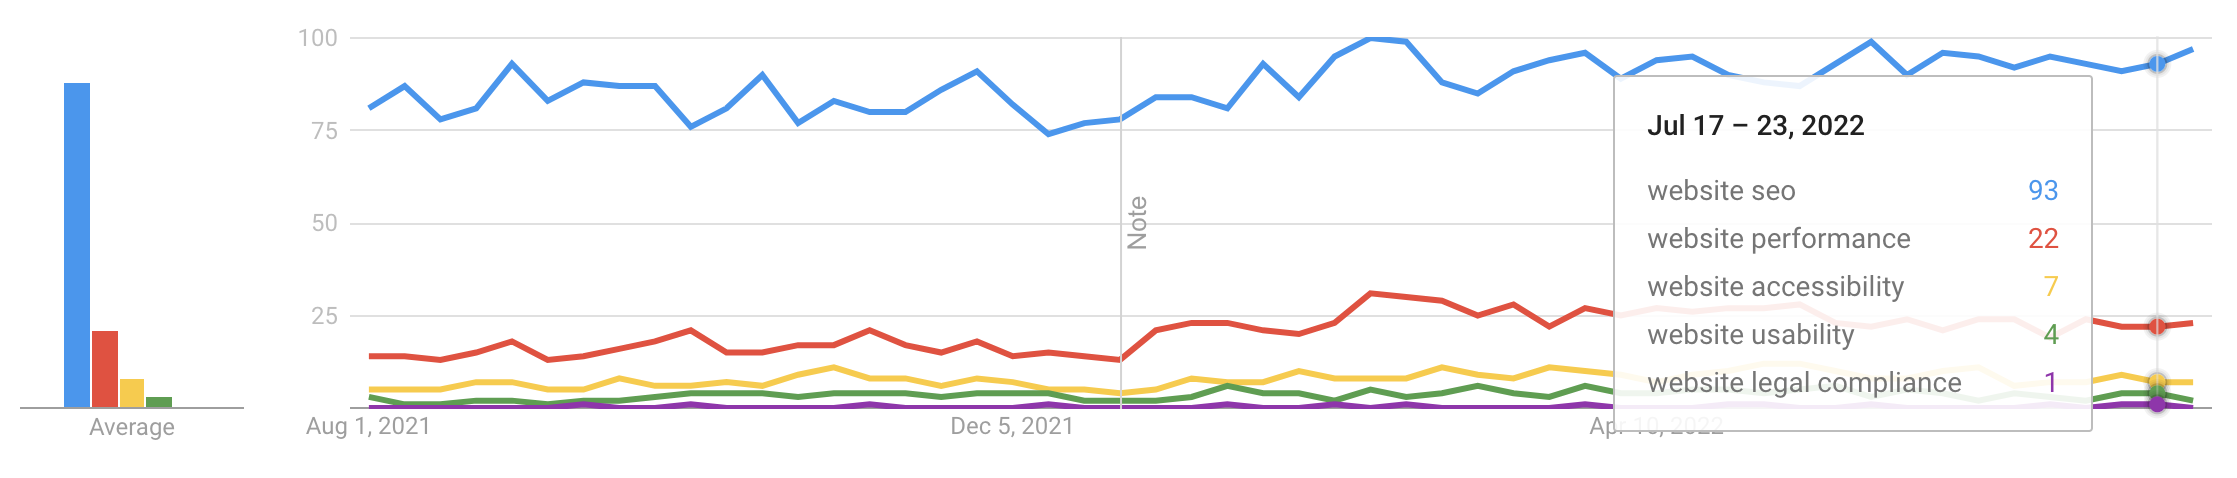 Google-Trends-Vergleich von Suchen nach SEO, Performance, Barrierefreiheit, Usability und Rechtssicherheit bei Websites.